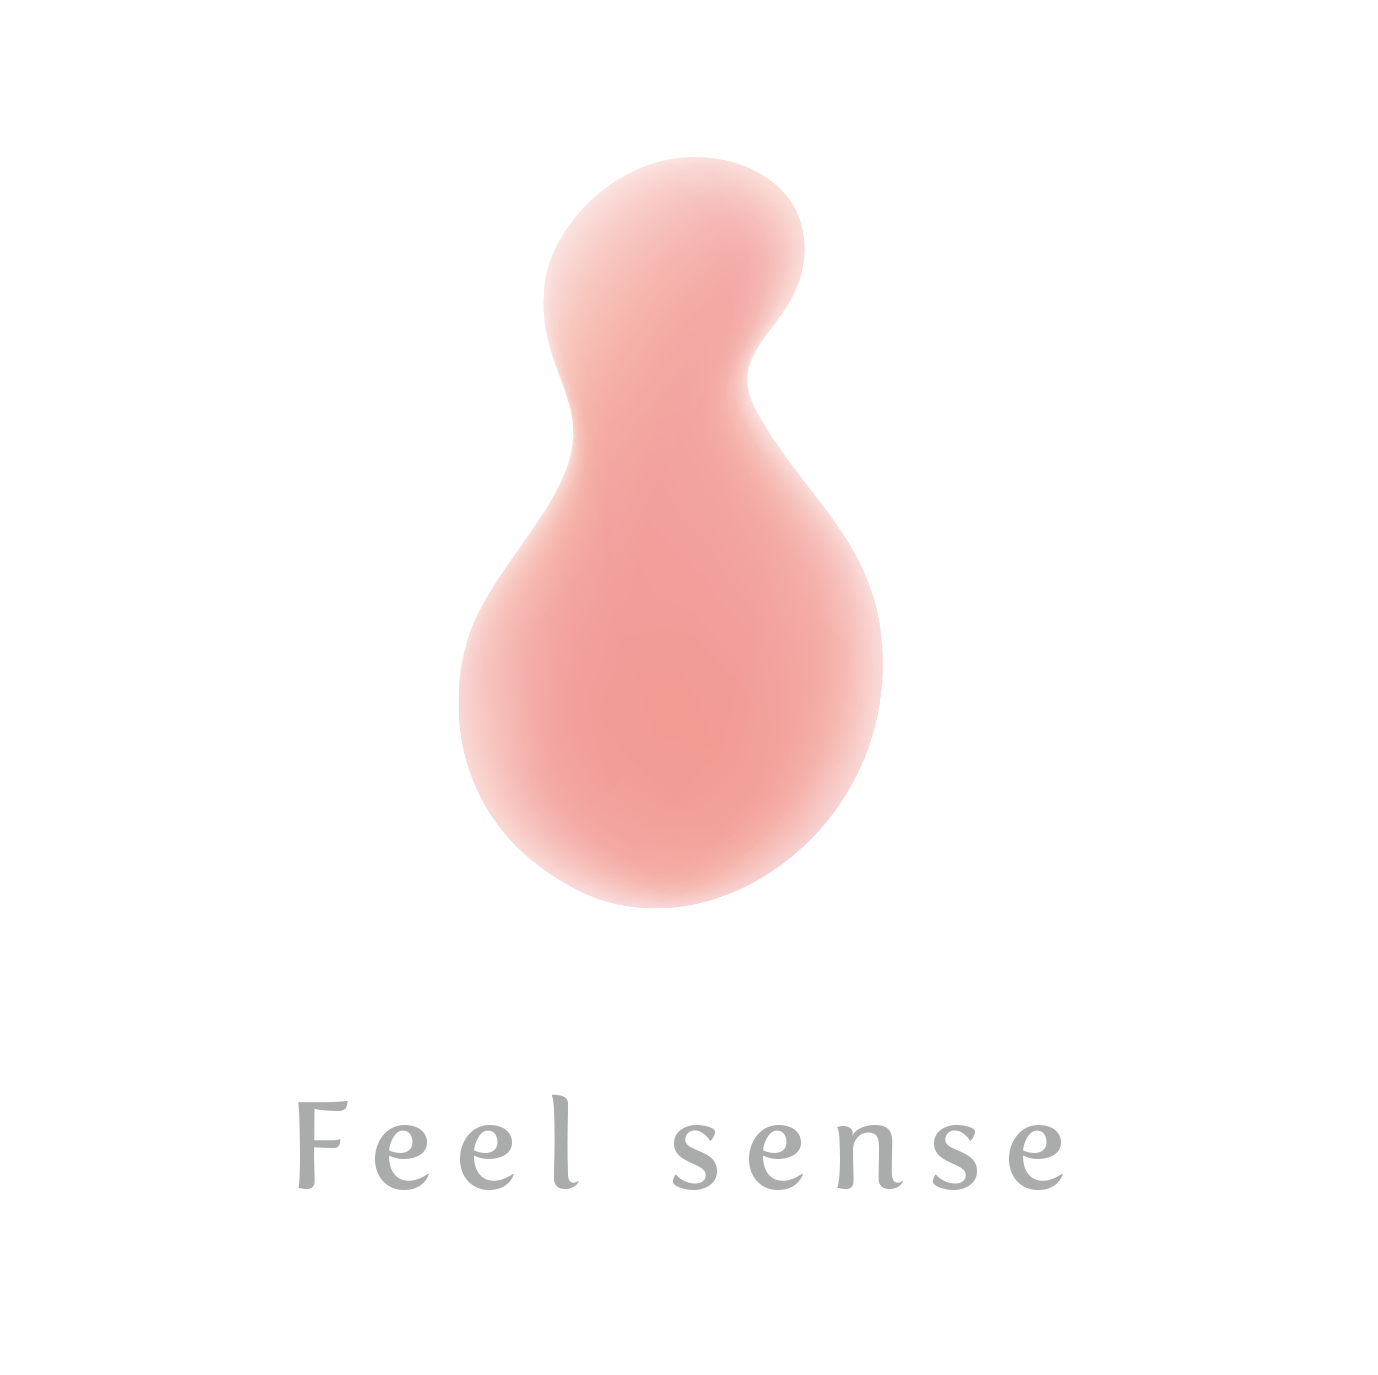 Feel sense